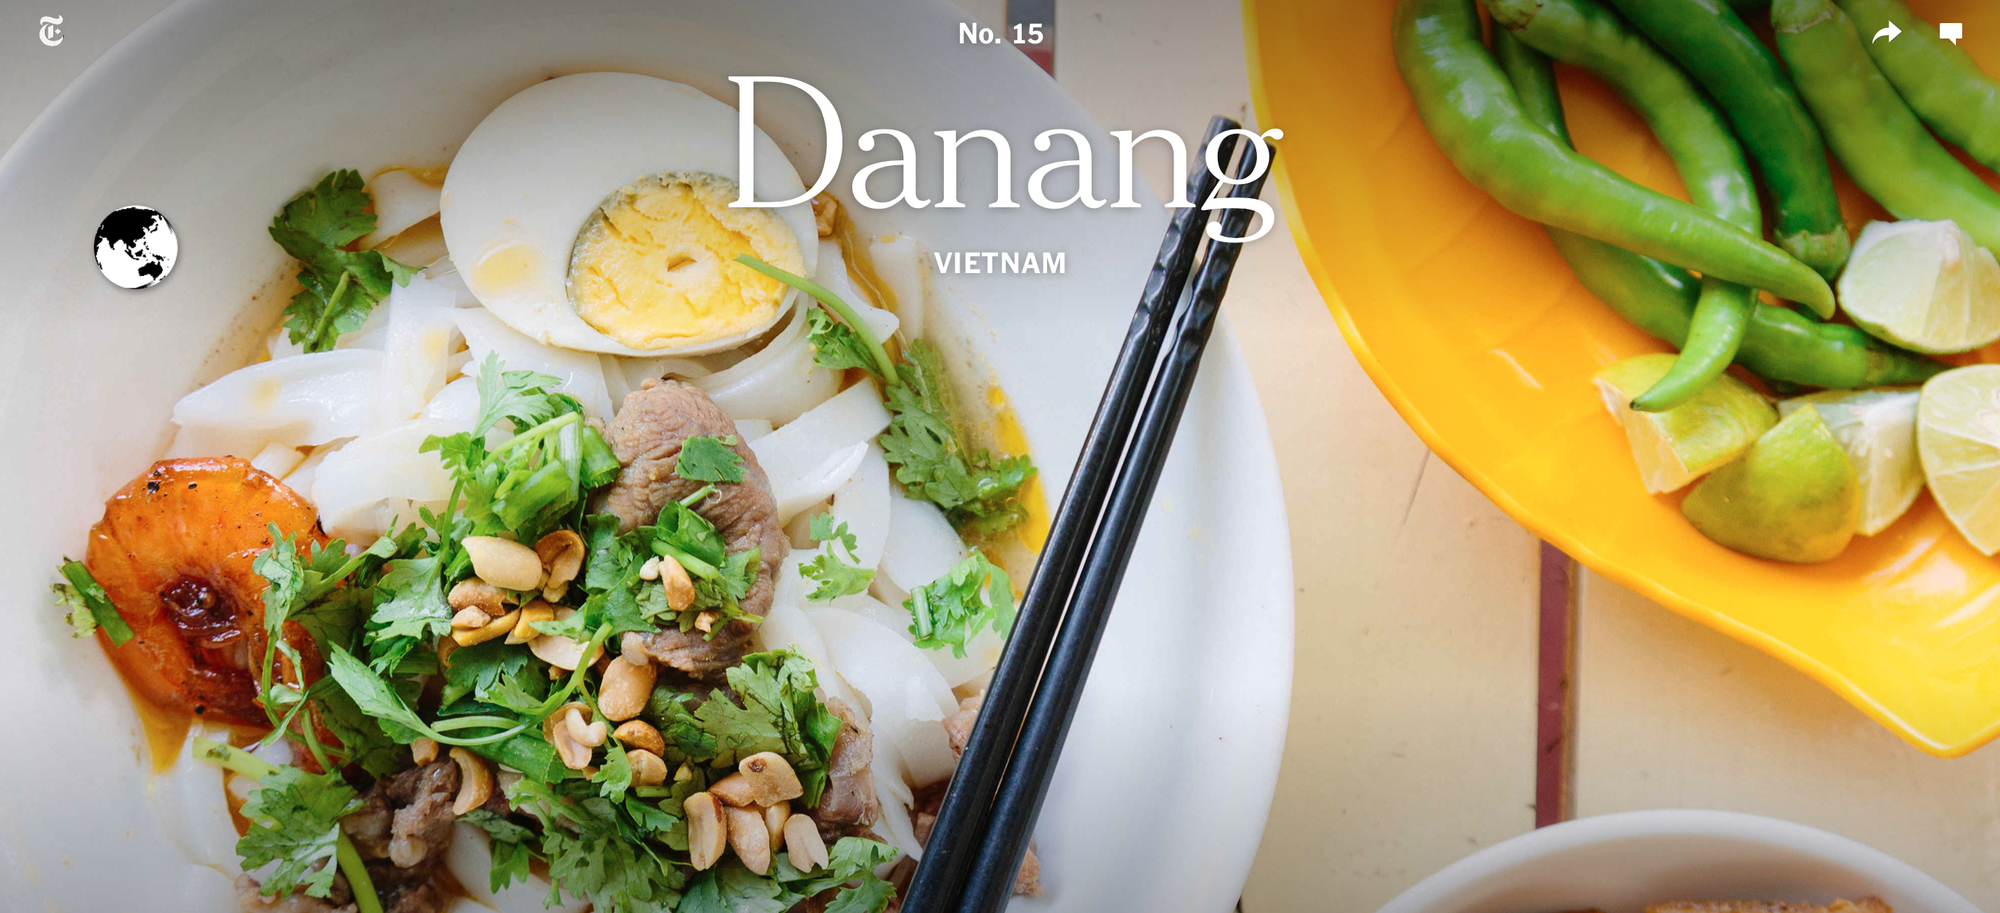 Báo The New York Times chọn Đà Nẵng làm điểm du lịch đáng đến nhất 2019 và ẩm thực là một trong những nguyên do chính - Ảnh 2.